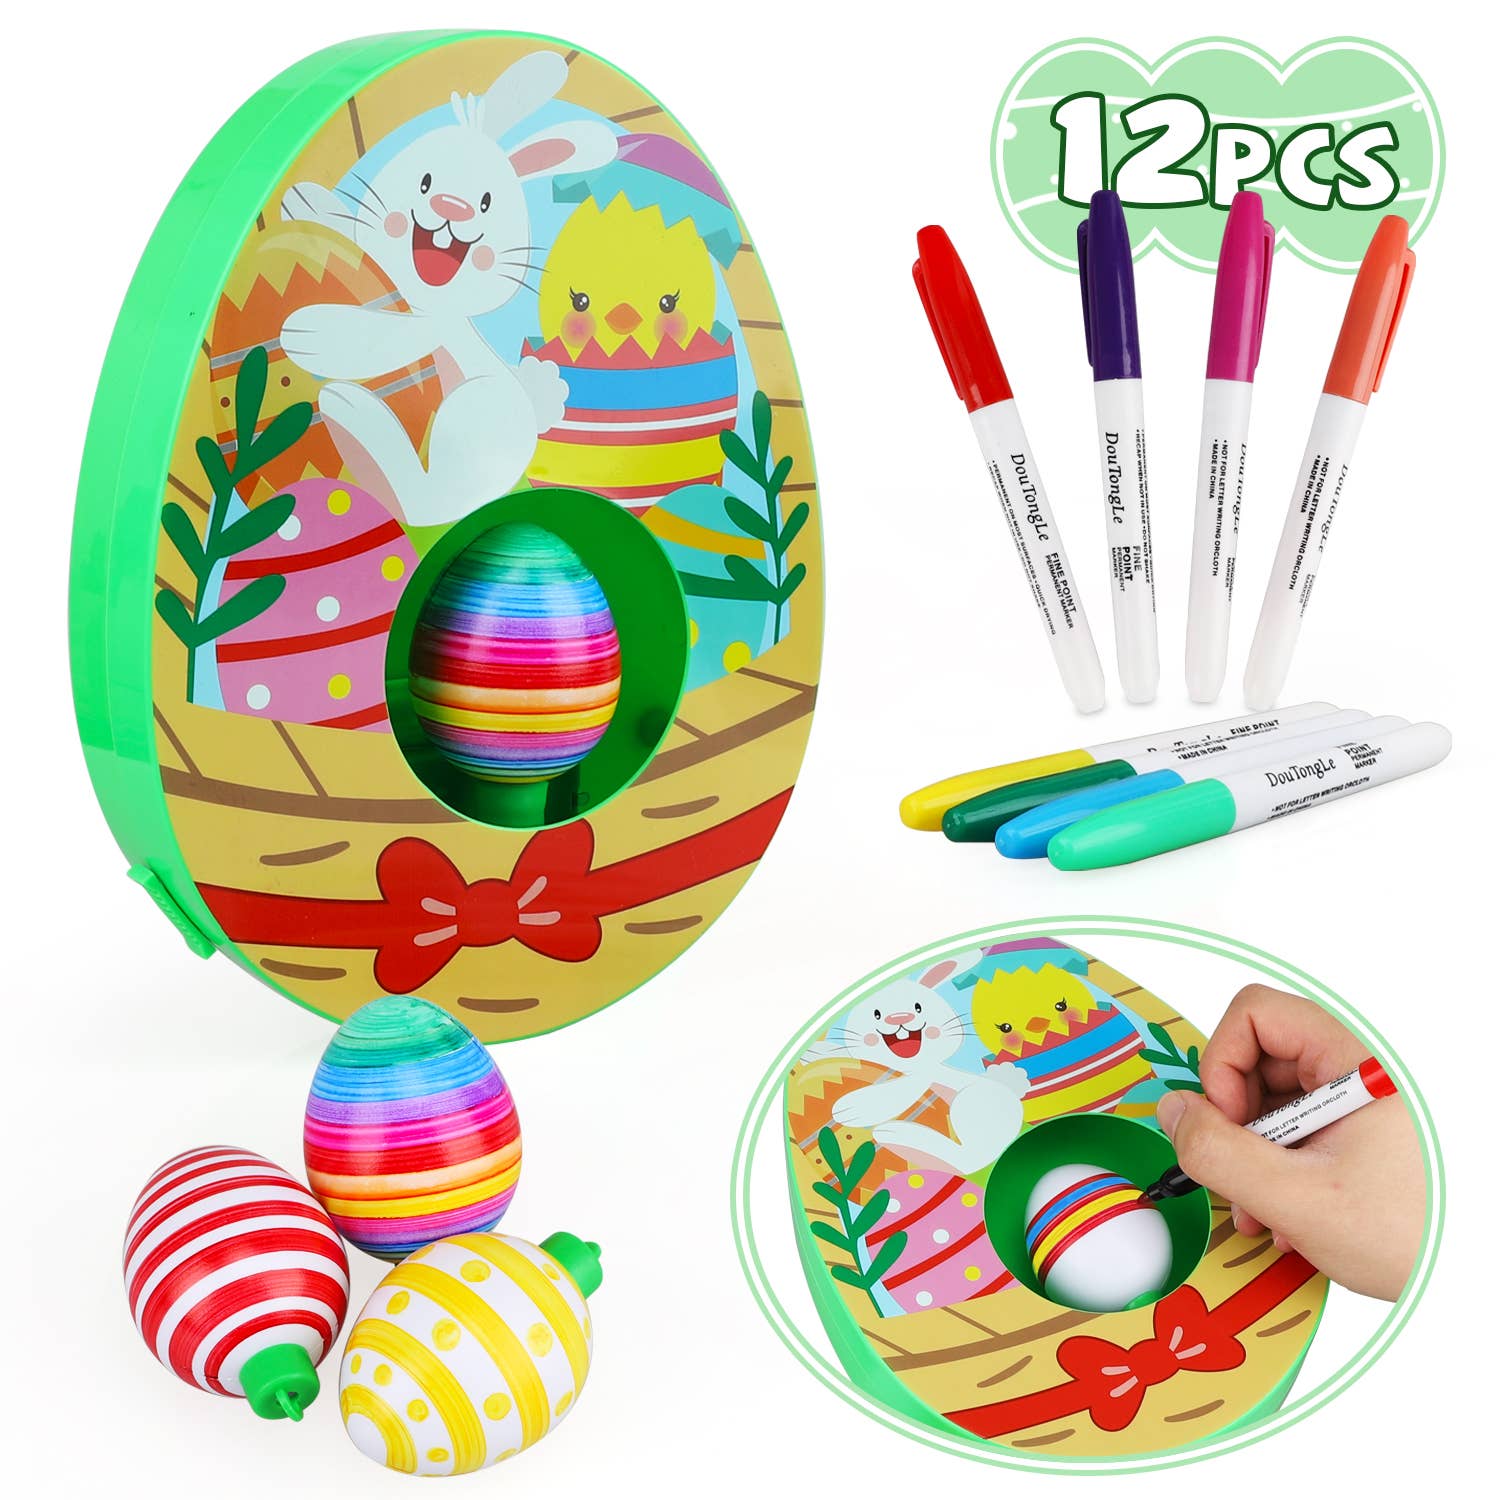 Egg Decorating Kit